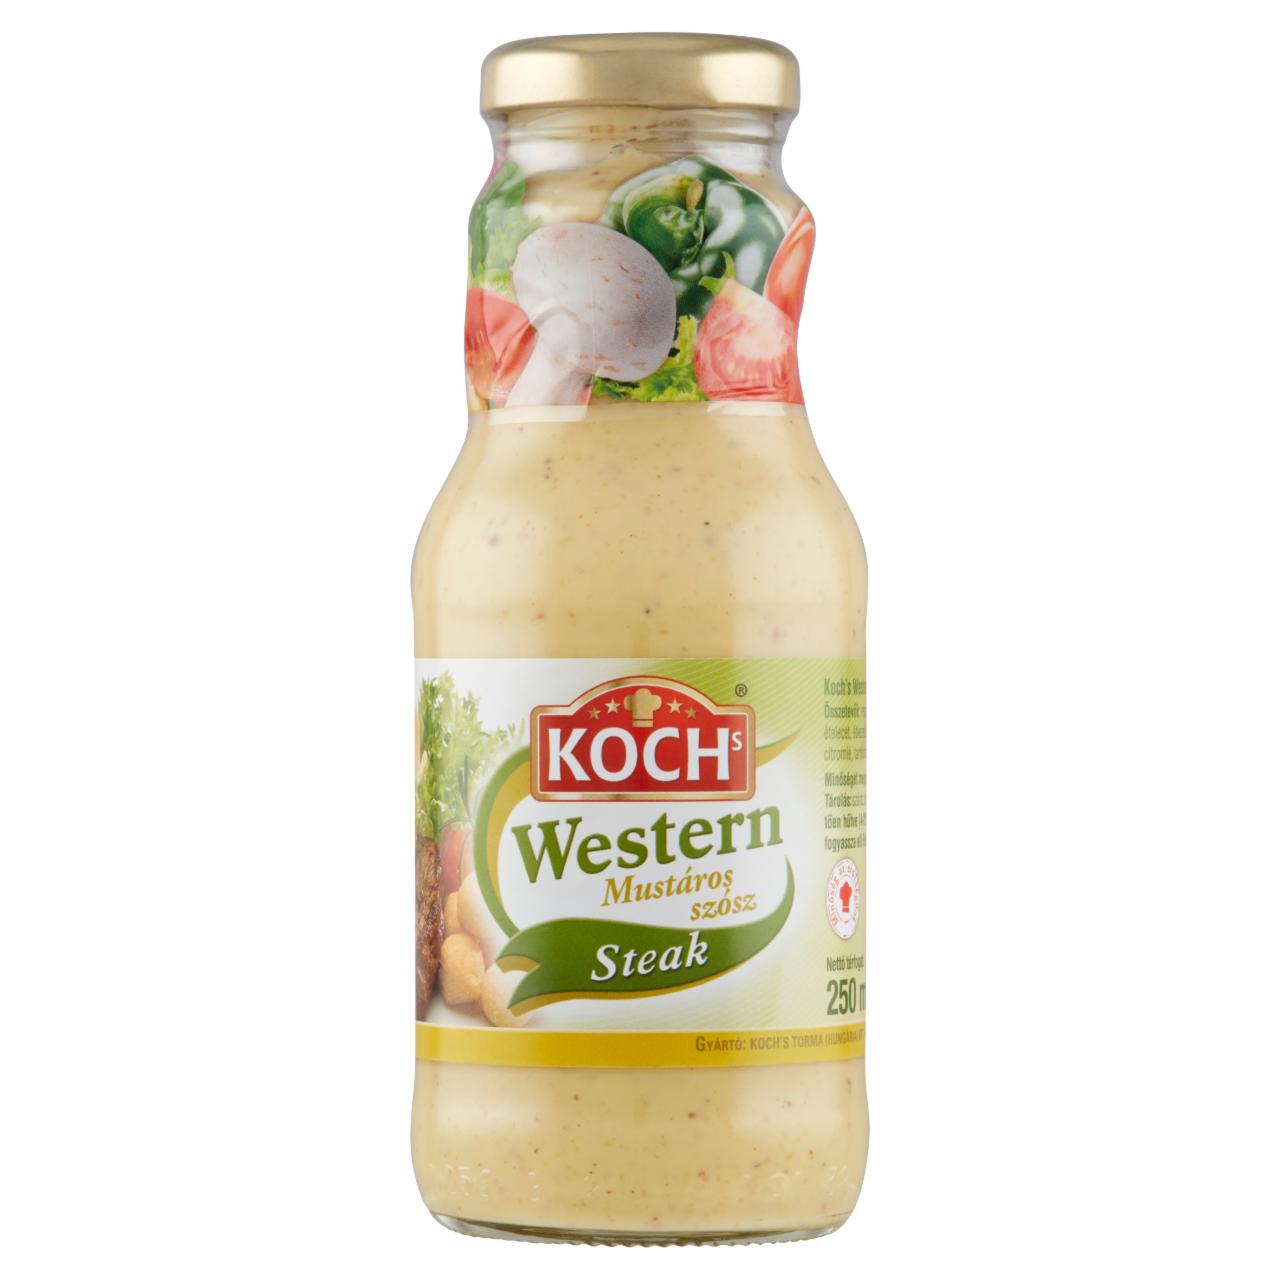 Képek - Koch's Western mustáros szósz sültekhez 250 ml